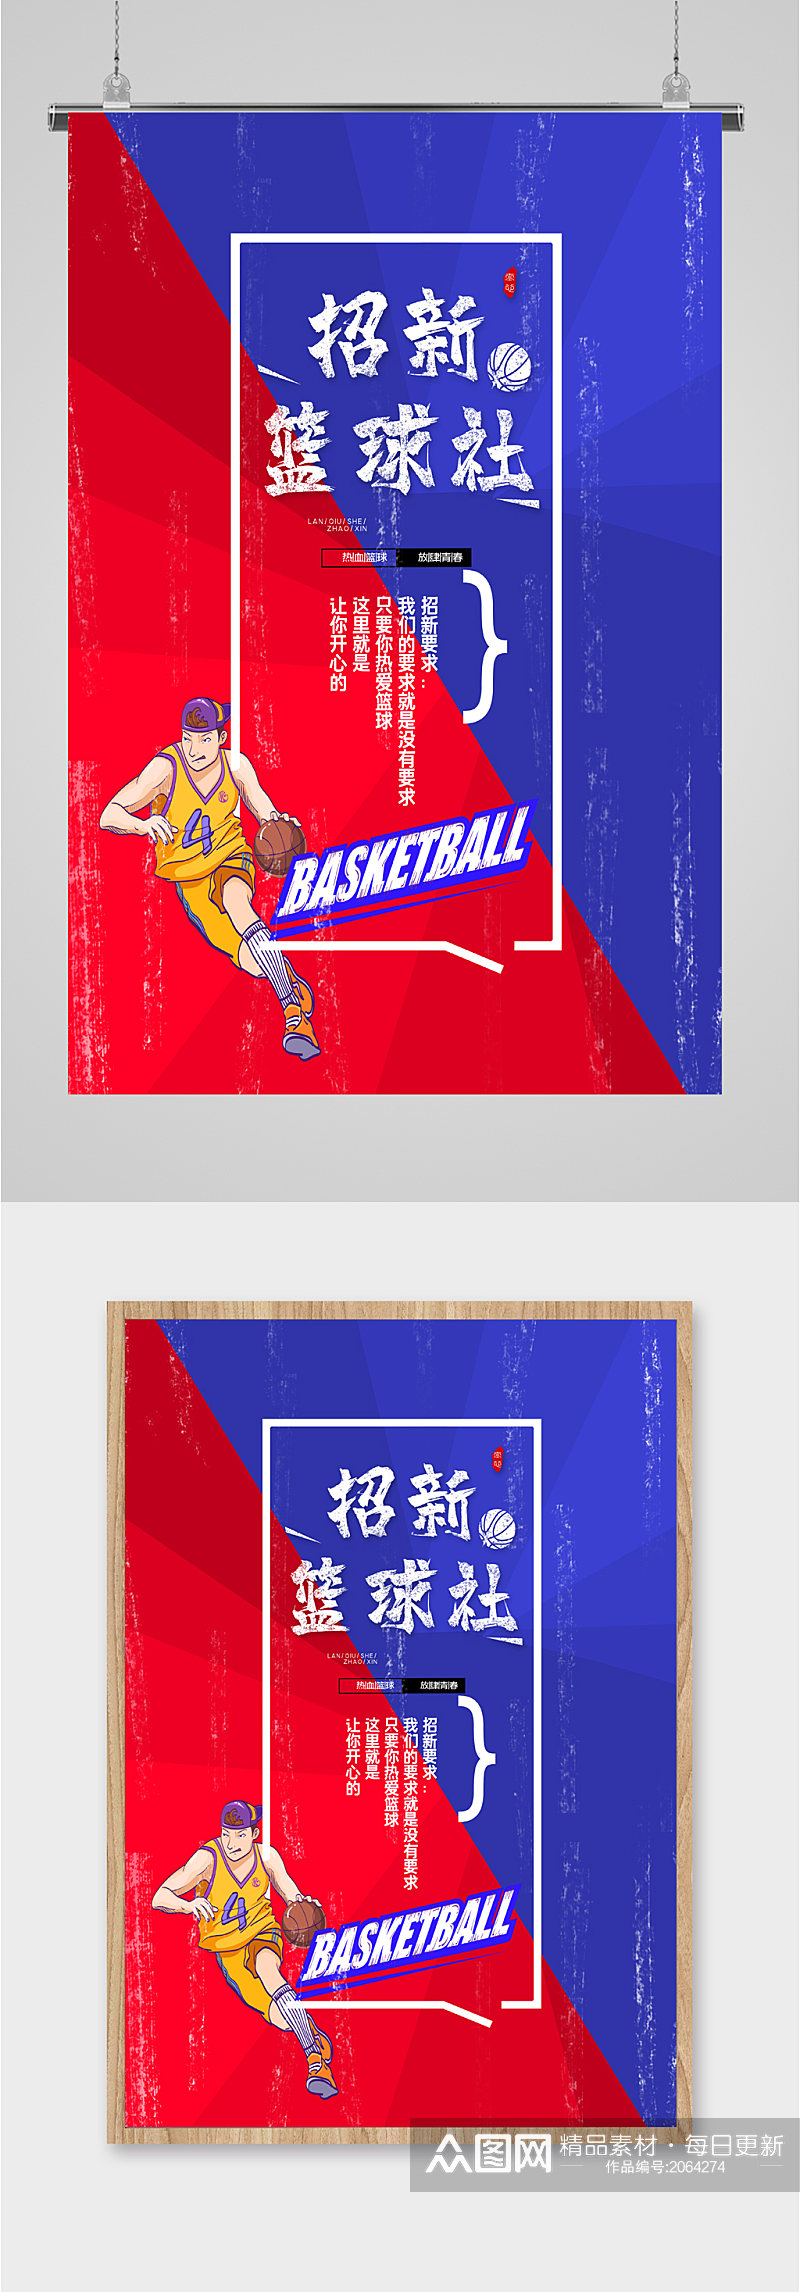 招新篮球社欢迎加入海报素材